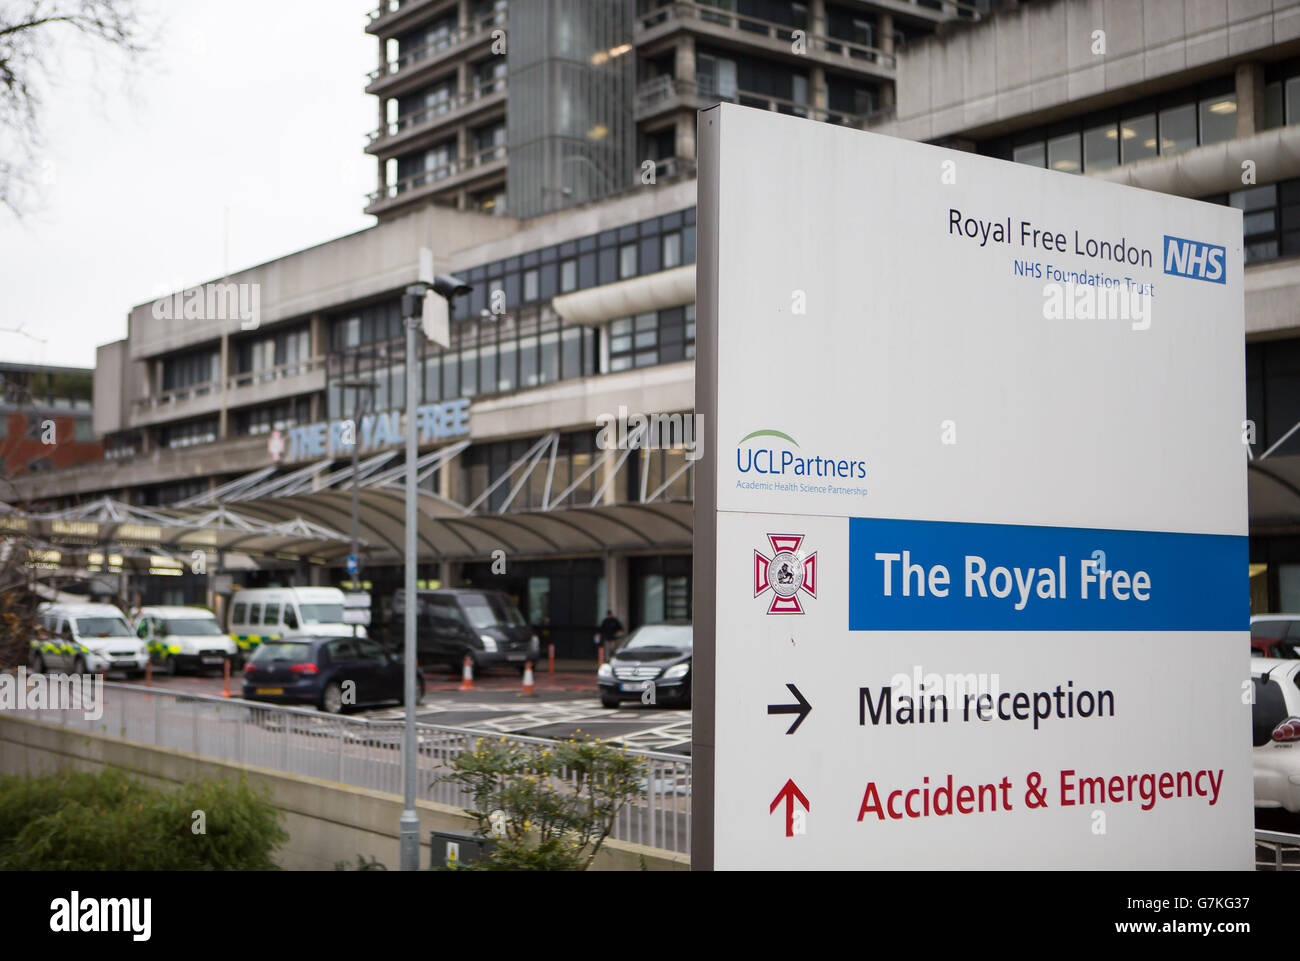 Der Eingang zum Royal Free Hospital in London, wo ein britischer Militäraktiker wegen Ebola-Überwachung eingeliefert wurde, nachdem er während der Behandlung einer Person in Sierra Leone eine Nadelstichverletzung erlitten hatte. DRÜCKEN Sie VERBANDSFOTO. Bilddatum: Samstag, 31. Januar 2015. Siehe PA Geschichte GESUNDHEIT Ebola. Bildnachweis sollte lauten: Daniel Leal-Olivas/PA Wire Stockfoto